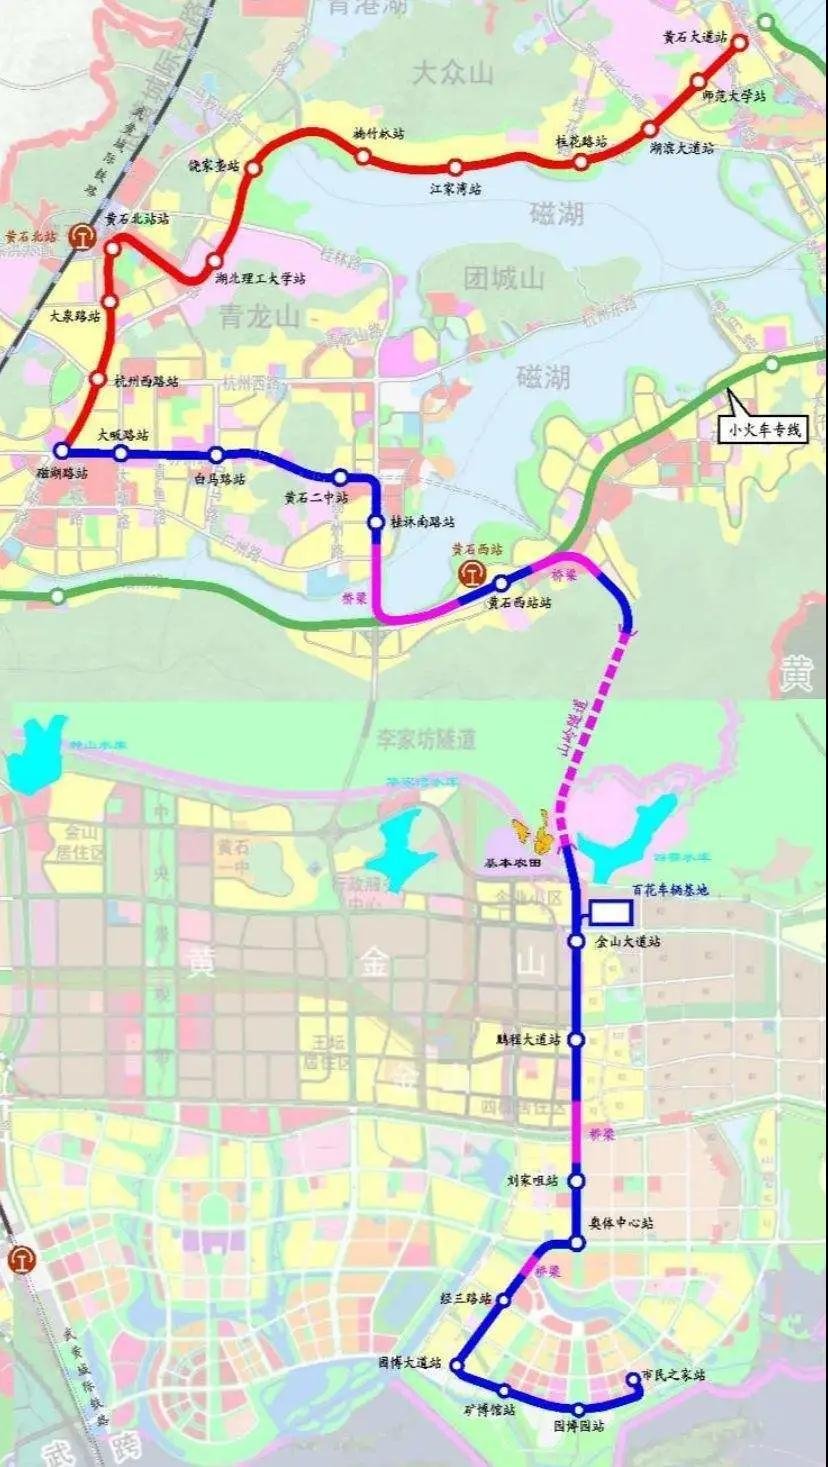 黄石有轨电车规划线路总长27km,全线共设站26座,起点慈湖路